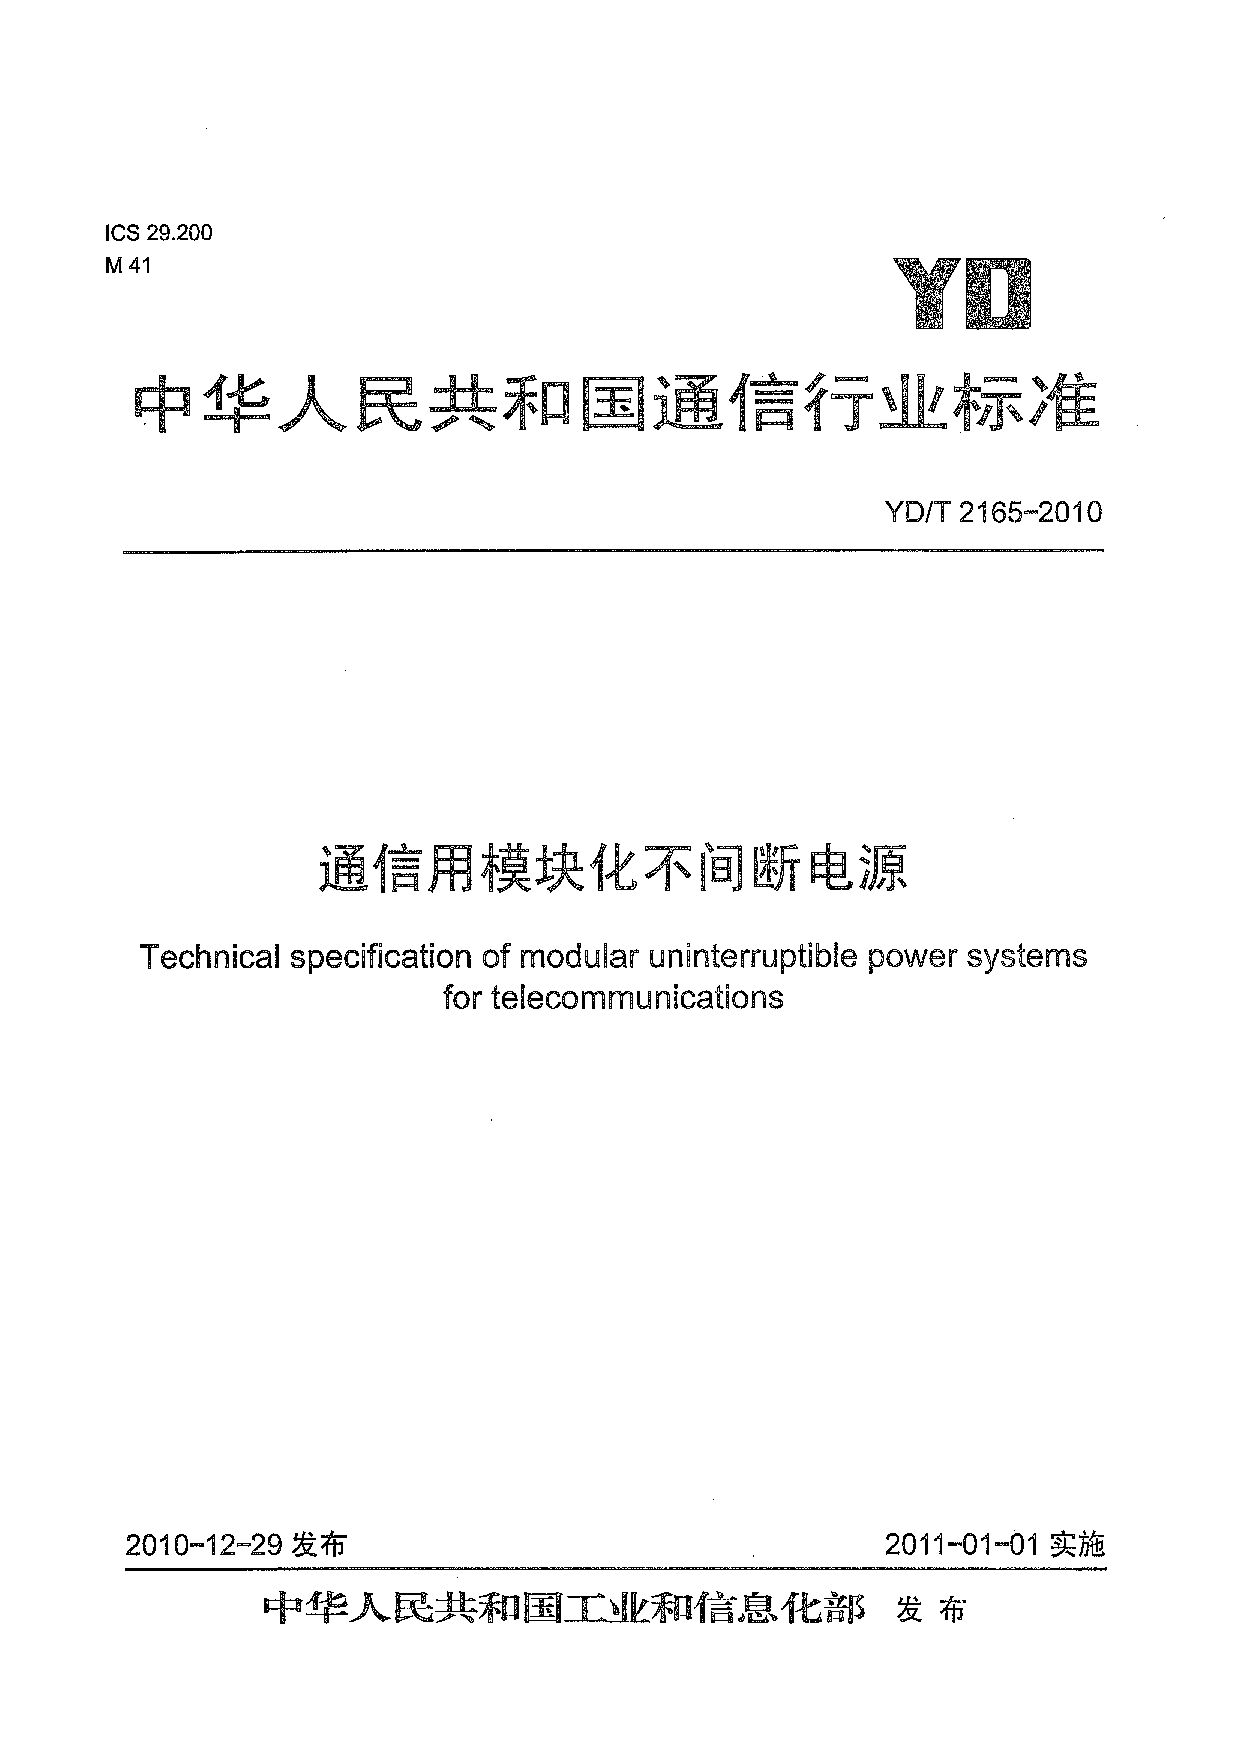 YD/T 2165-2010